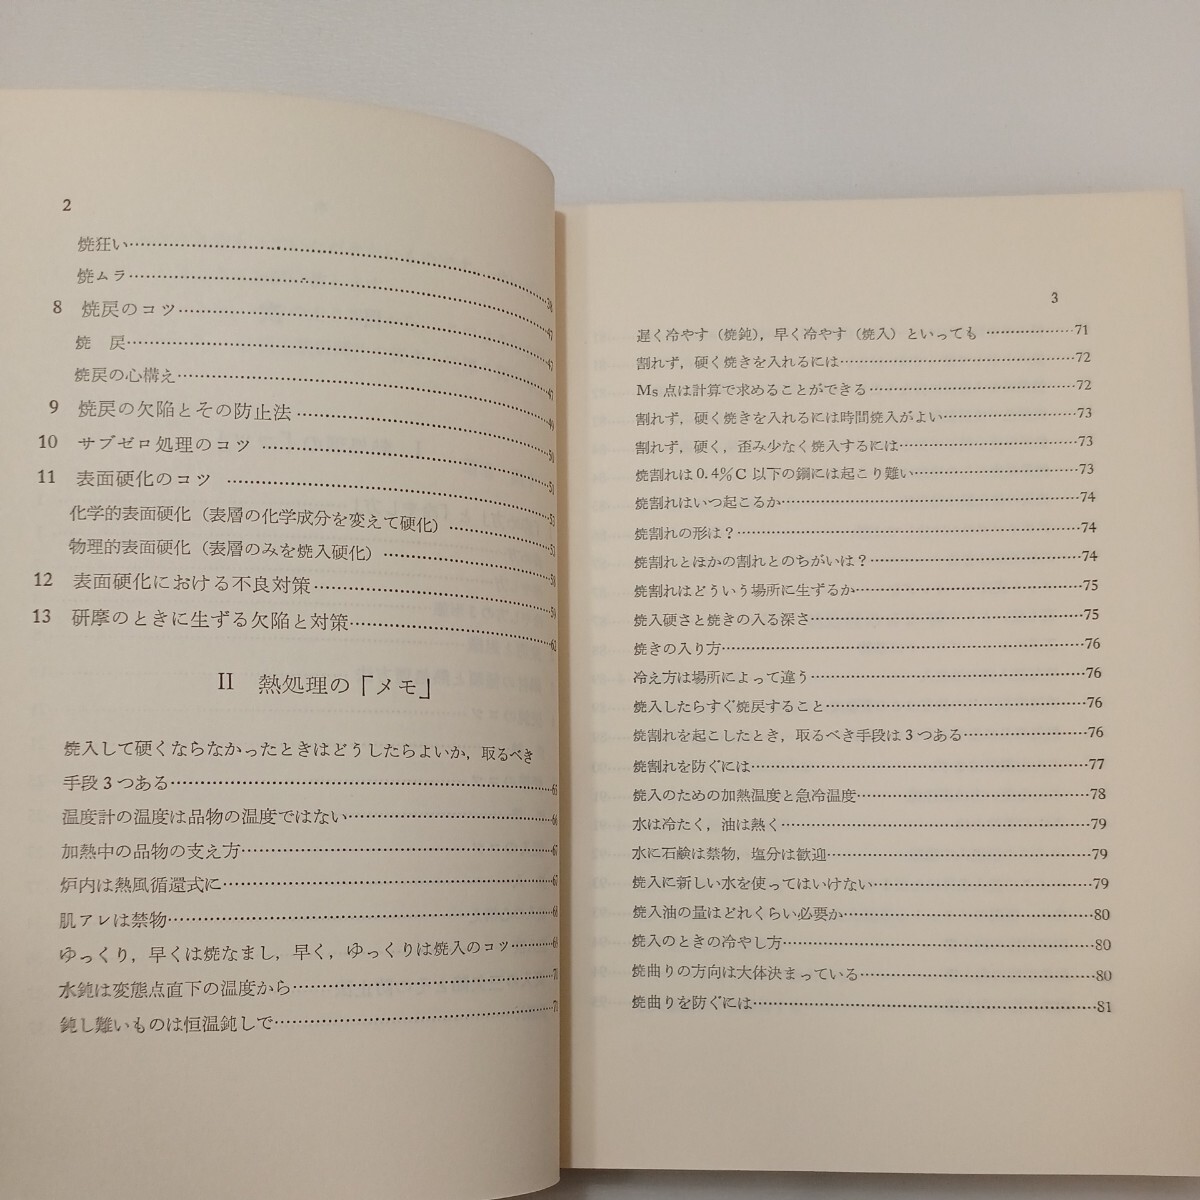 zaa-578♪熱処理ノート 単行本 　大和久 重雄 (著) 日刊工業新聞社 (1979/9/10)